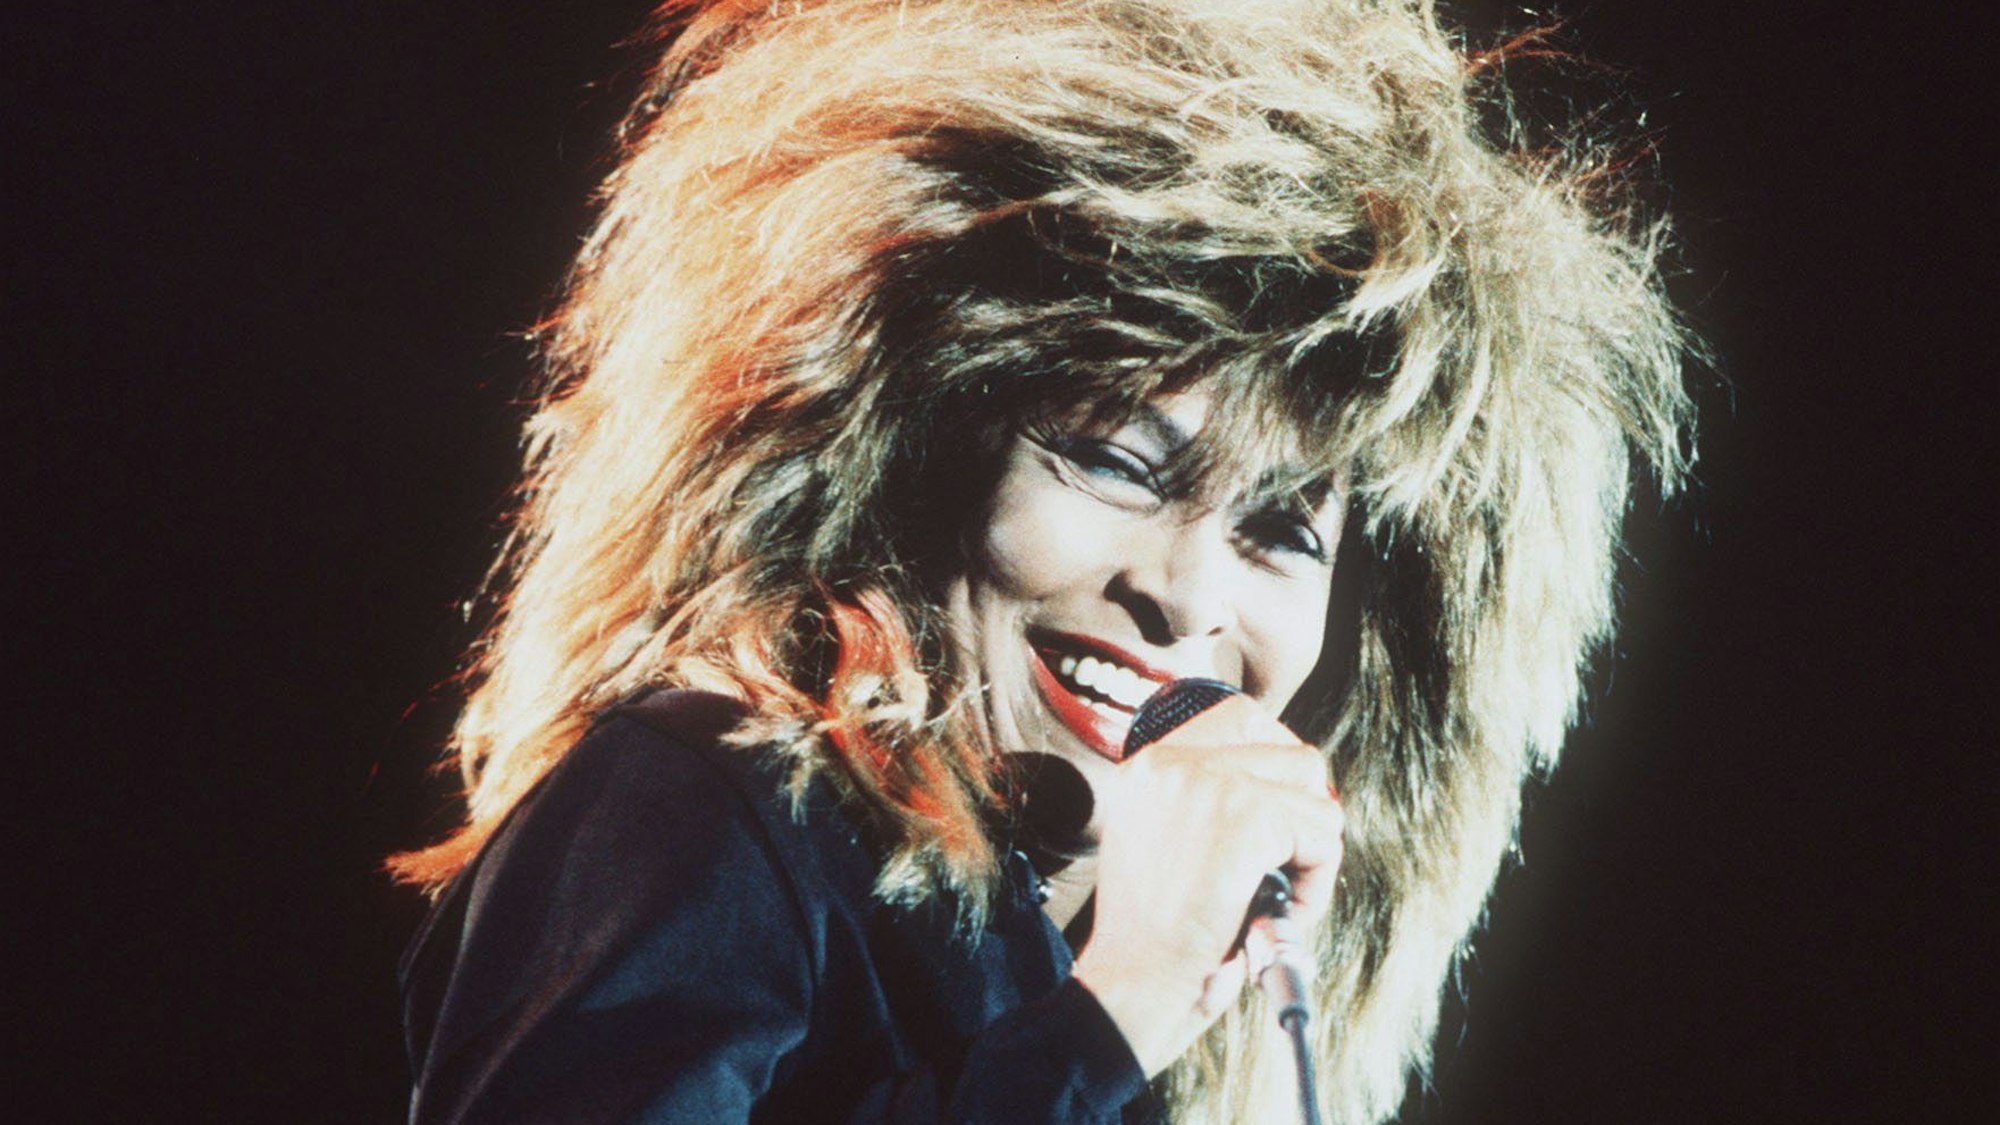 Für ihre extrovertierten Frisuren war Tina Turner bekannt, hier 1987.